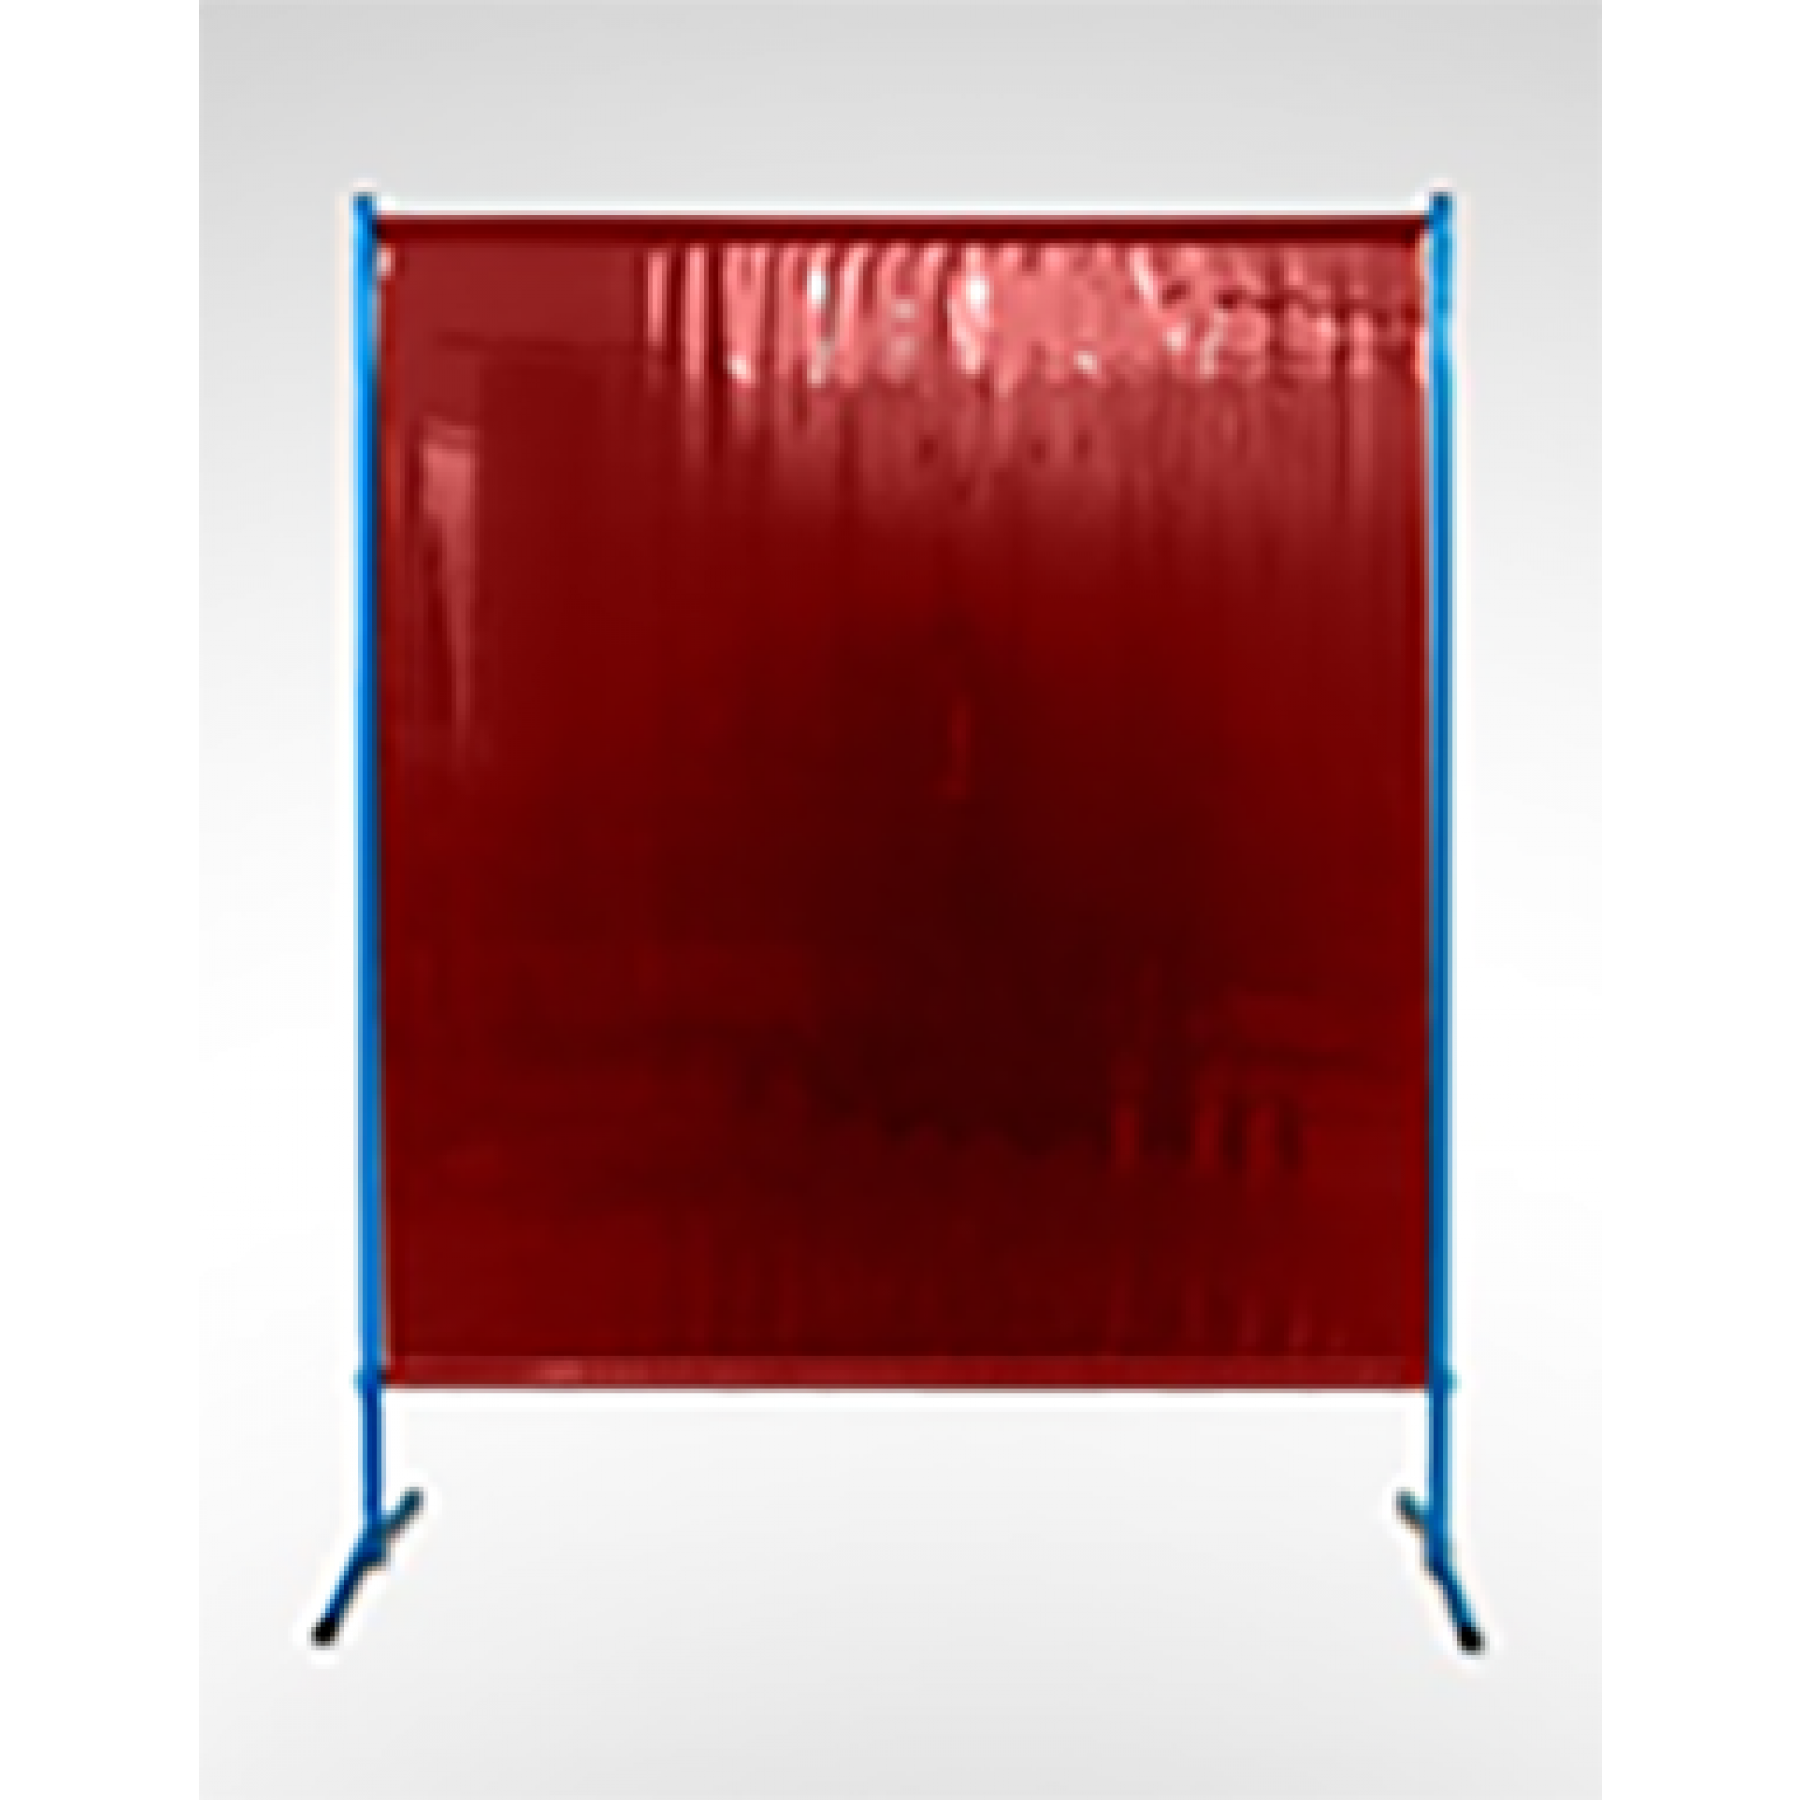 Schweißschirm ECO, 1455 x 1870 mm (Breite x Höhe), 0.4 mm Vorhang, Rot